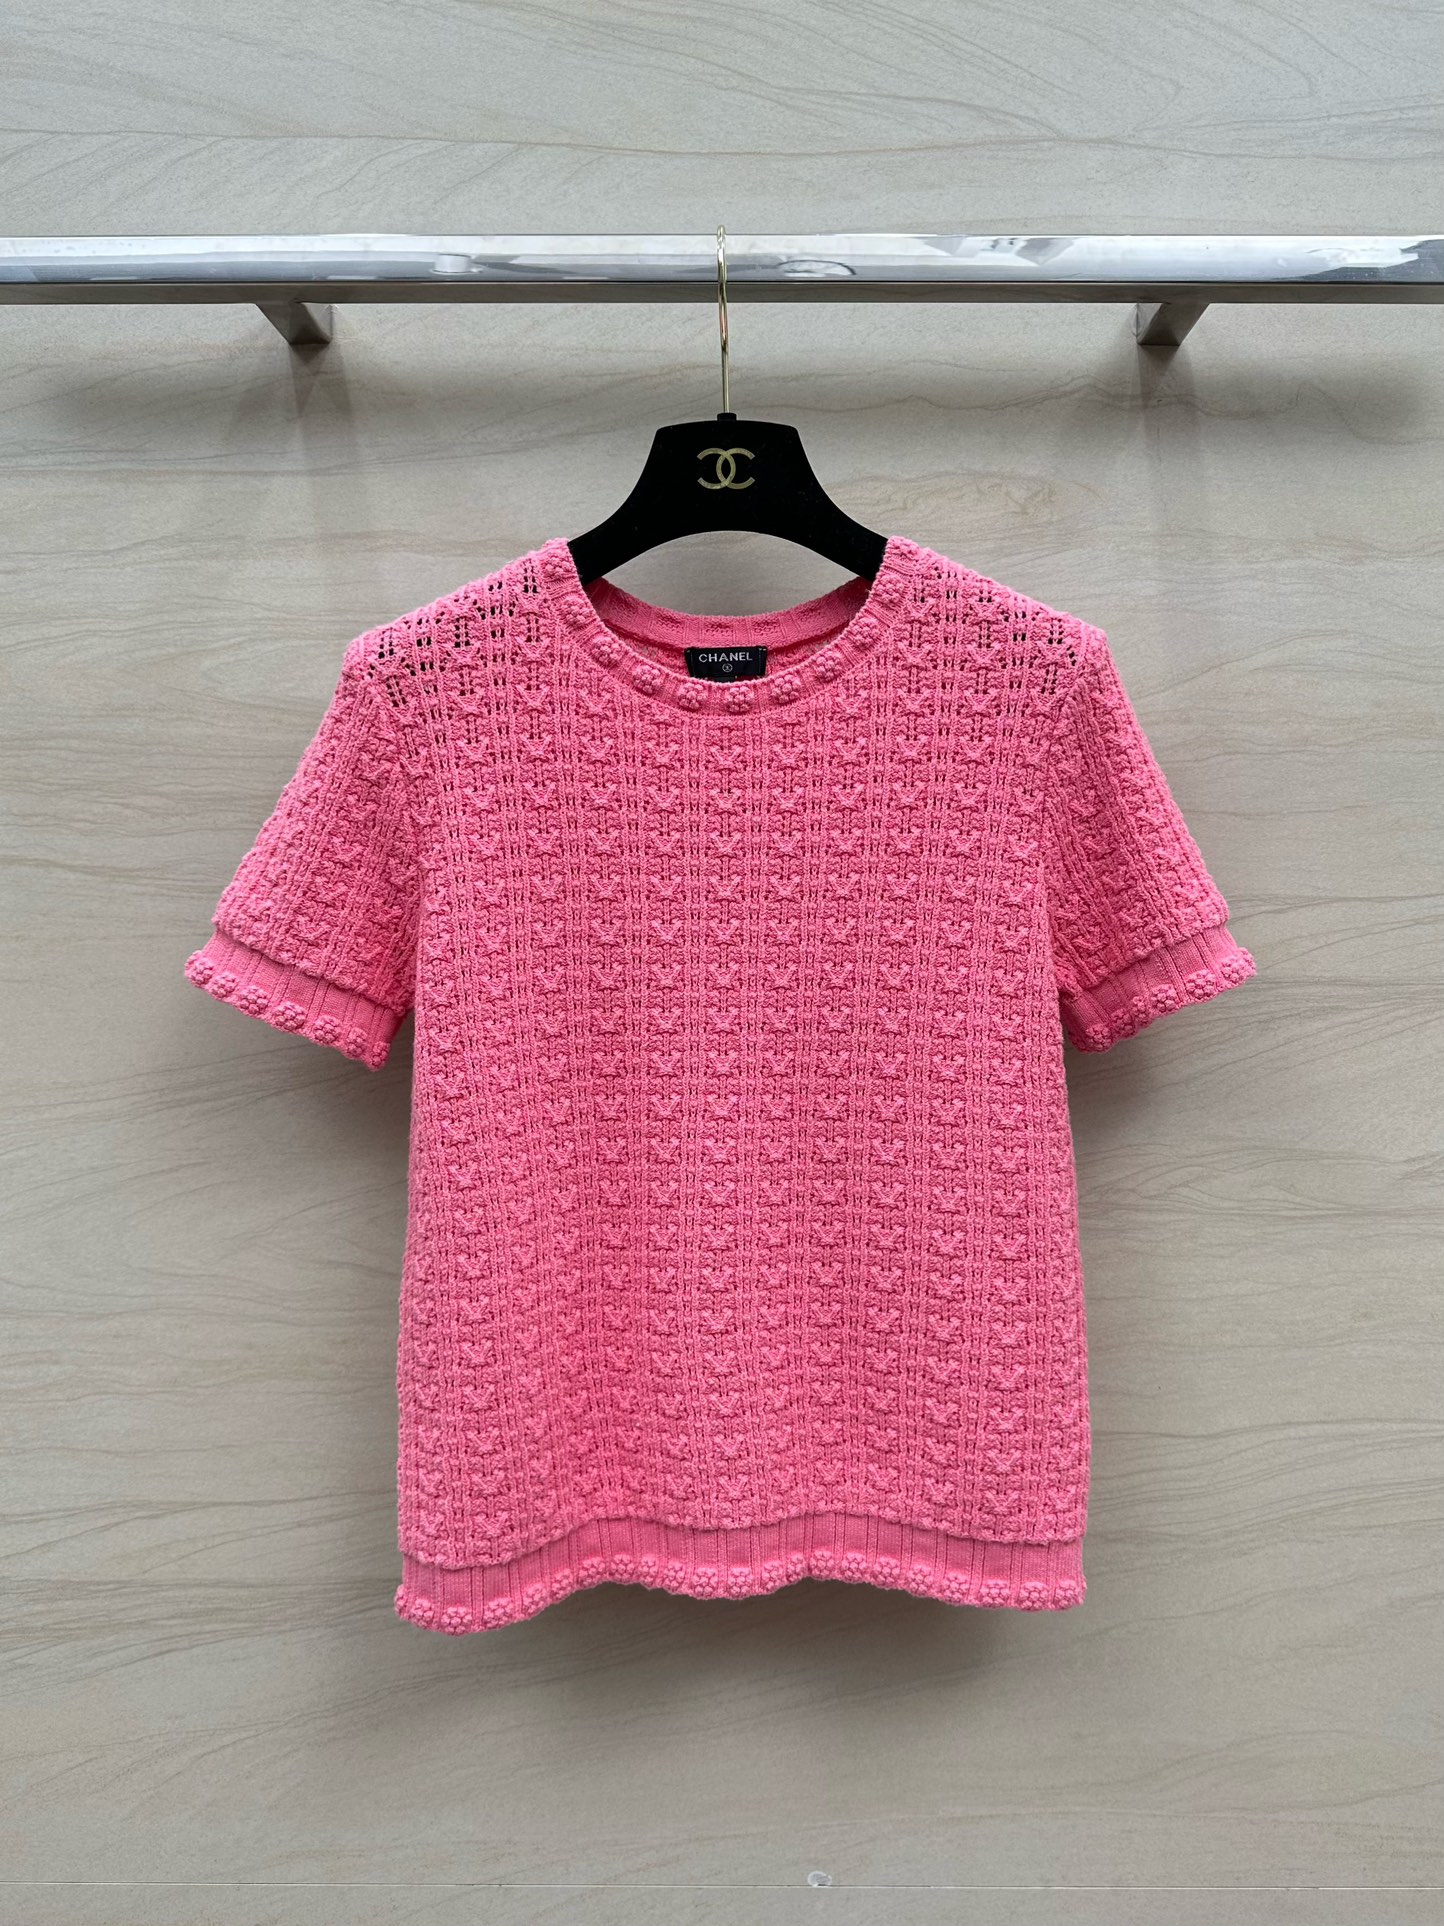 シャネル t シャツ レディーススーパーコピー 心地よい着用感 純綿 トップス 半袖 シンプル 高級感 品質保証 ピンク_1